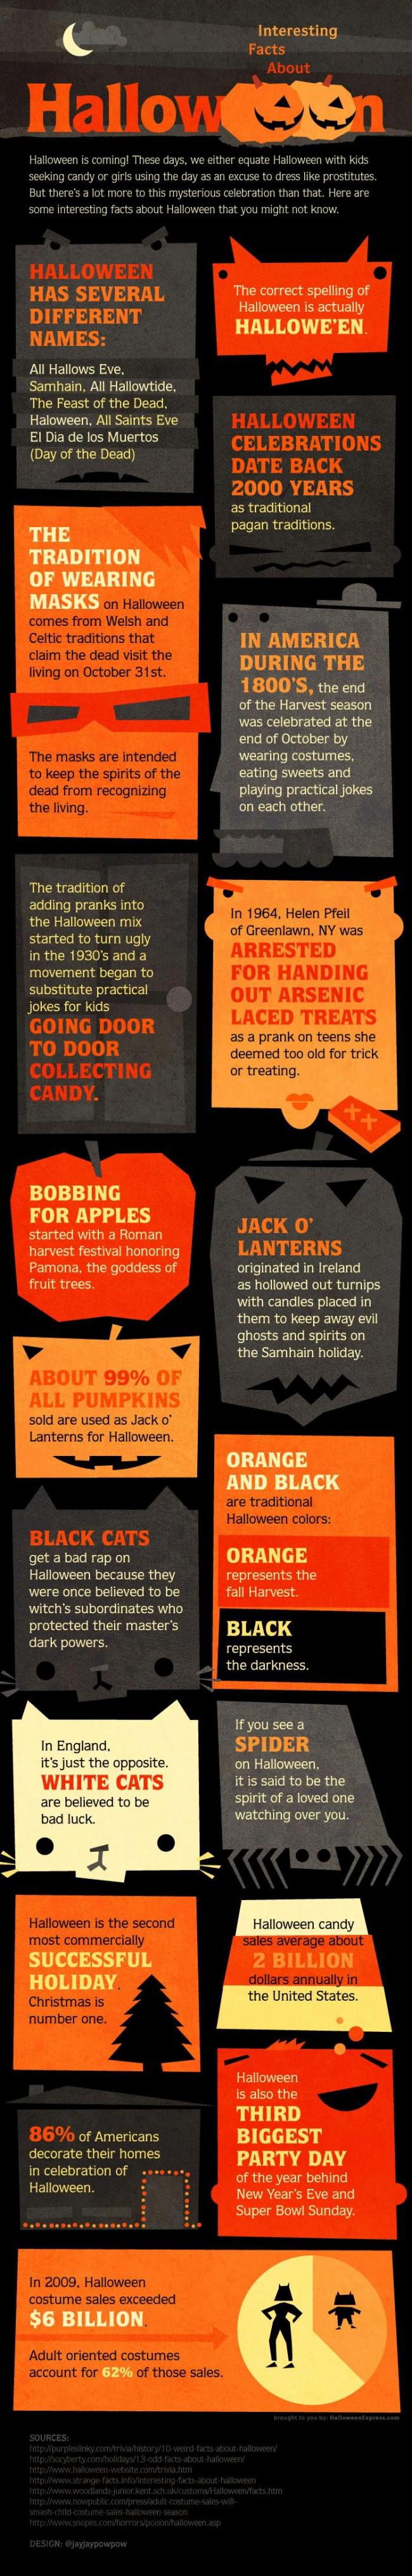 Infographie: L’histoire d’Halloween en image et en chiffres